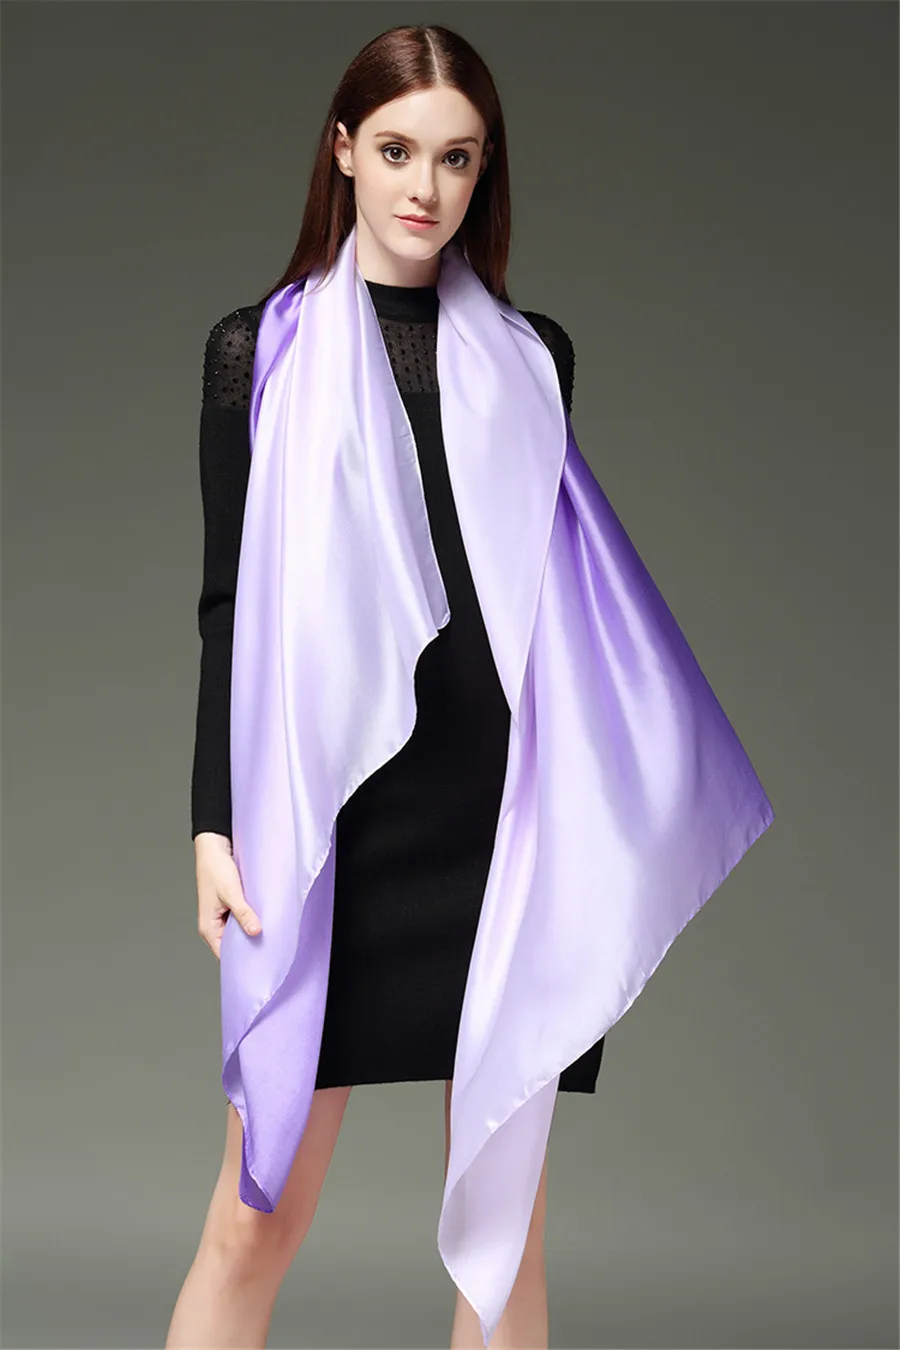 Летний искусственный шелк шарфы для женщин для градиент шелковый шарф шали и палантины Femme модный хиджаб палантины дропшиппинг